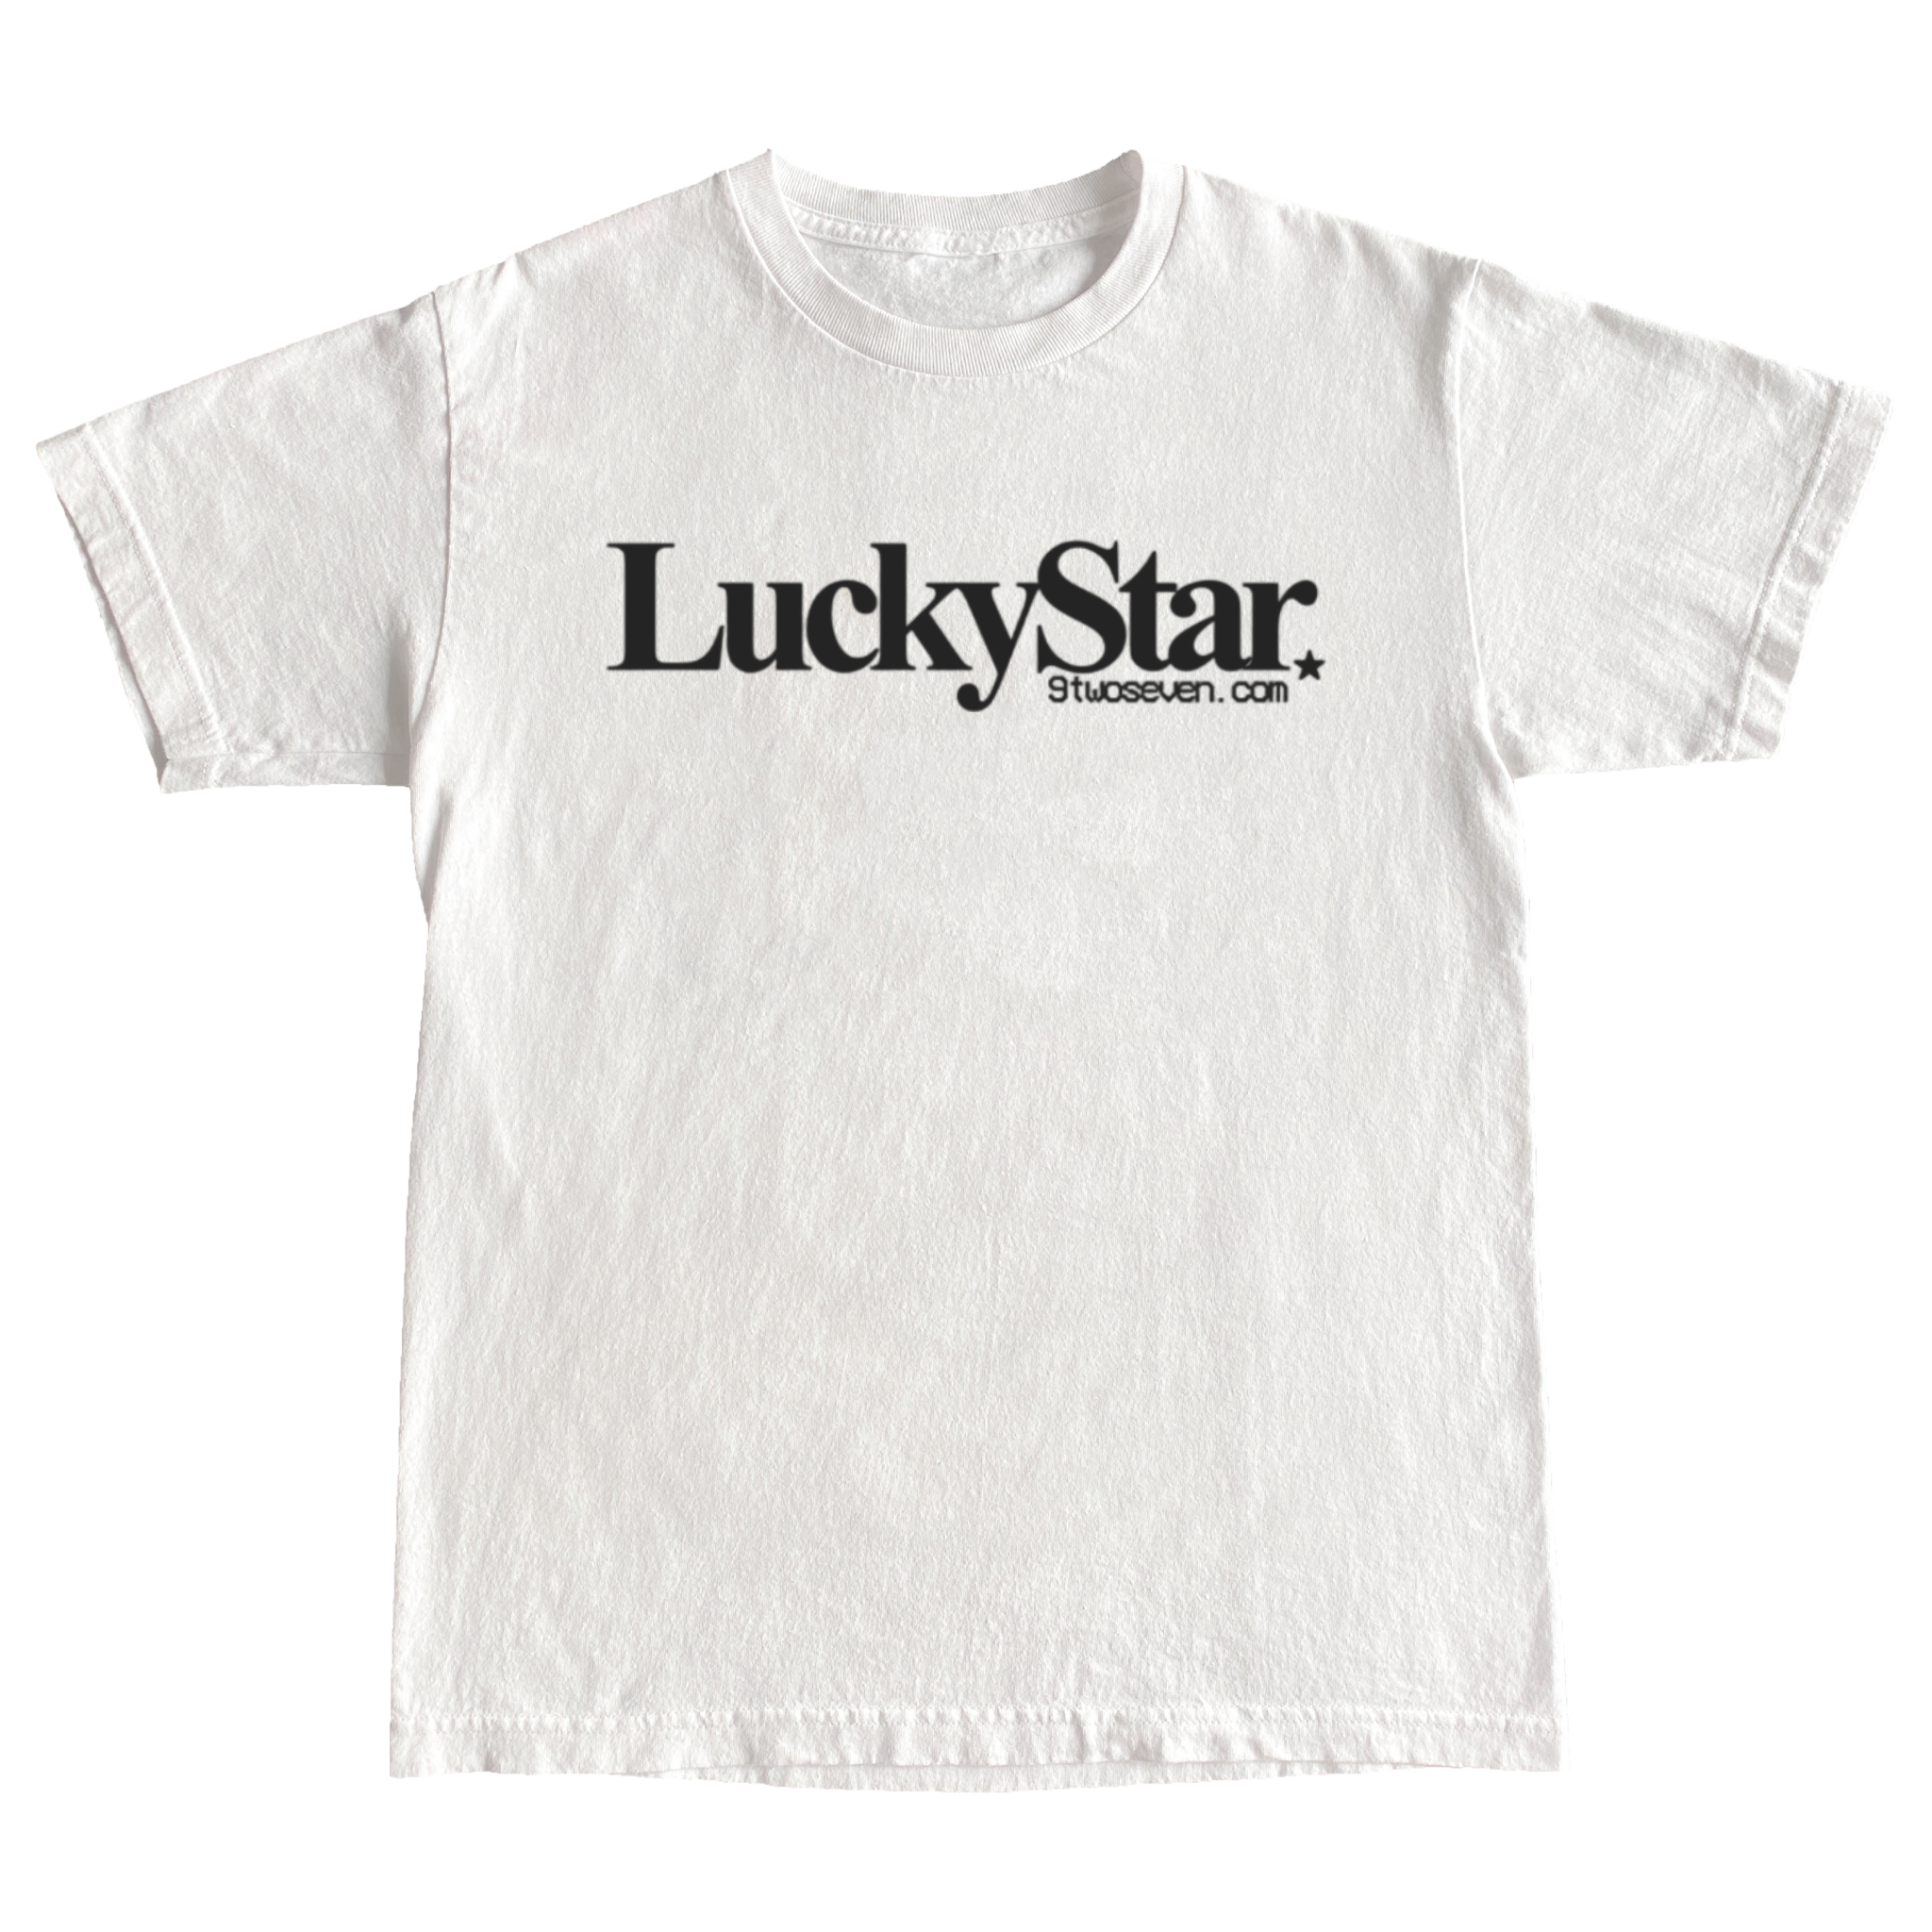 LuckyStar Tee Shirt